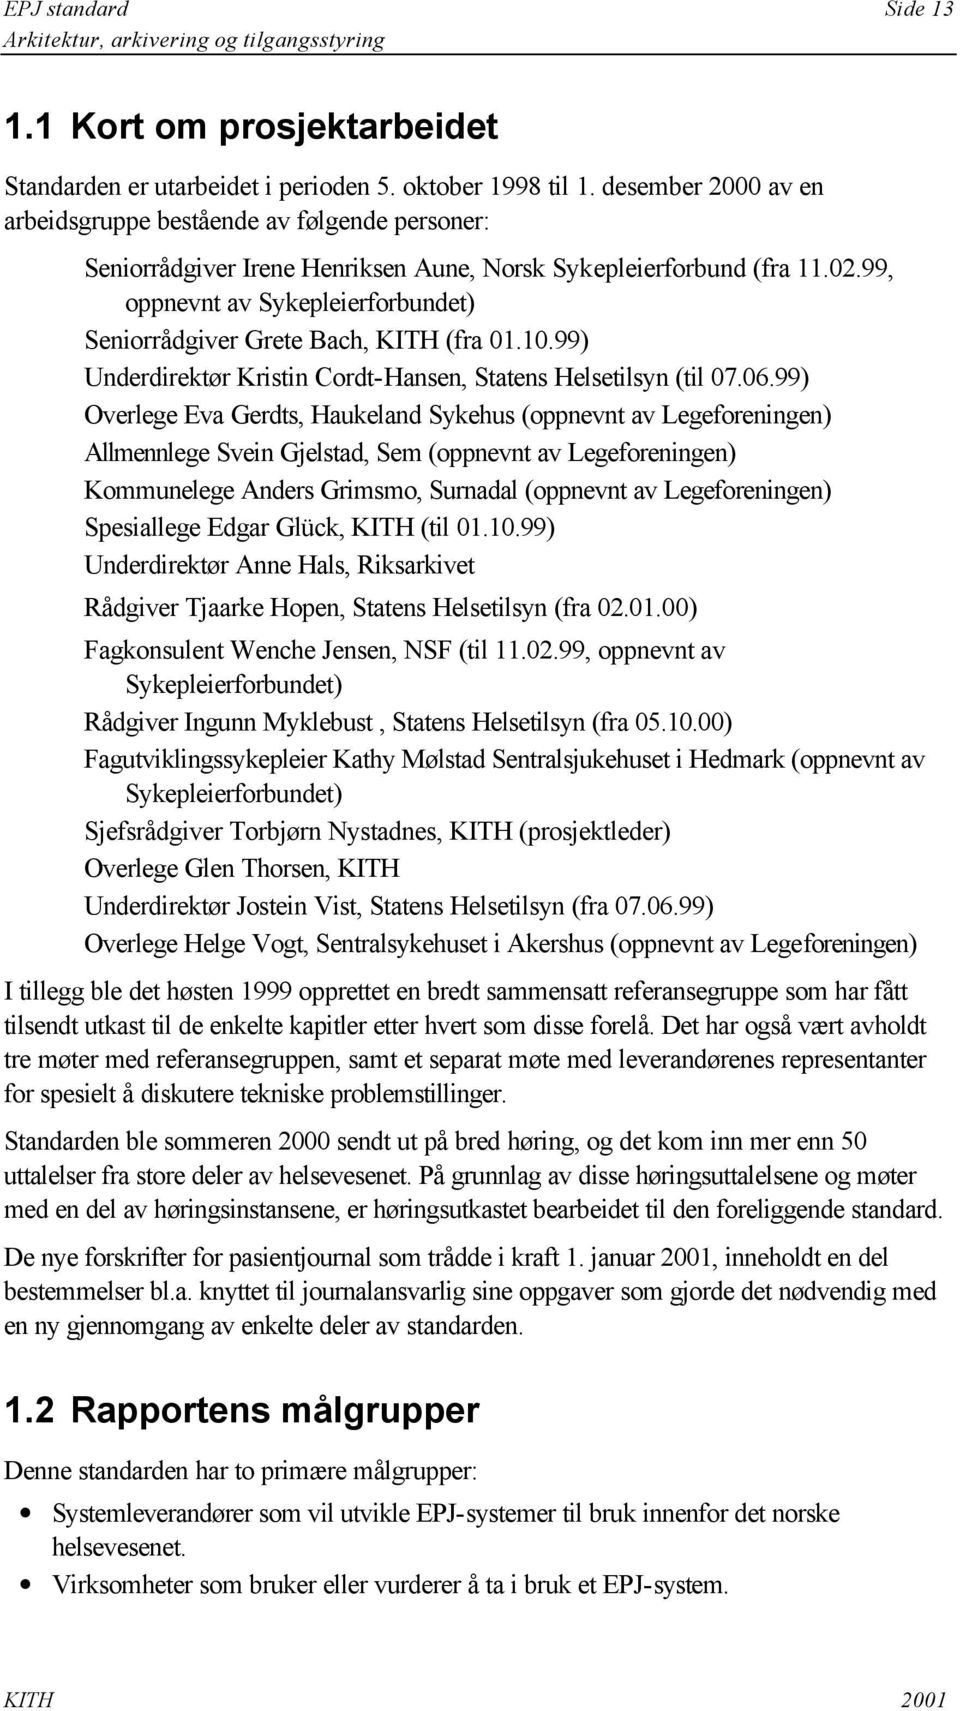 99, oppnevnt av Sykepleierforbundet) Seniorrådgiver Grete Bach, KITH (fra 01.10.99) Underdirektør Kristin Cordt-Hansen, Statens Helsetilsyn (til 07.06.